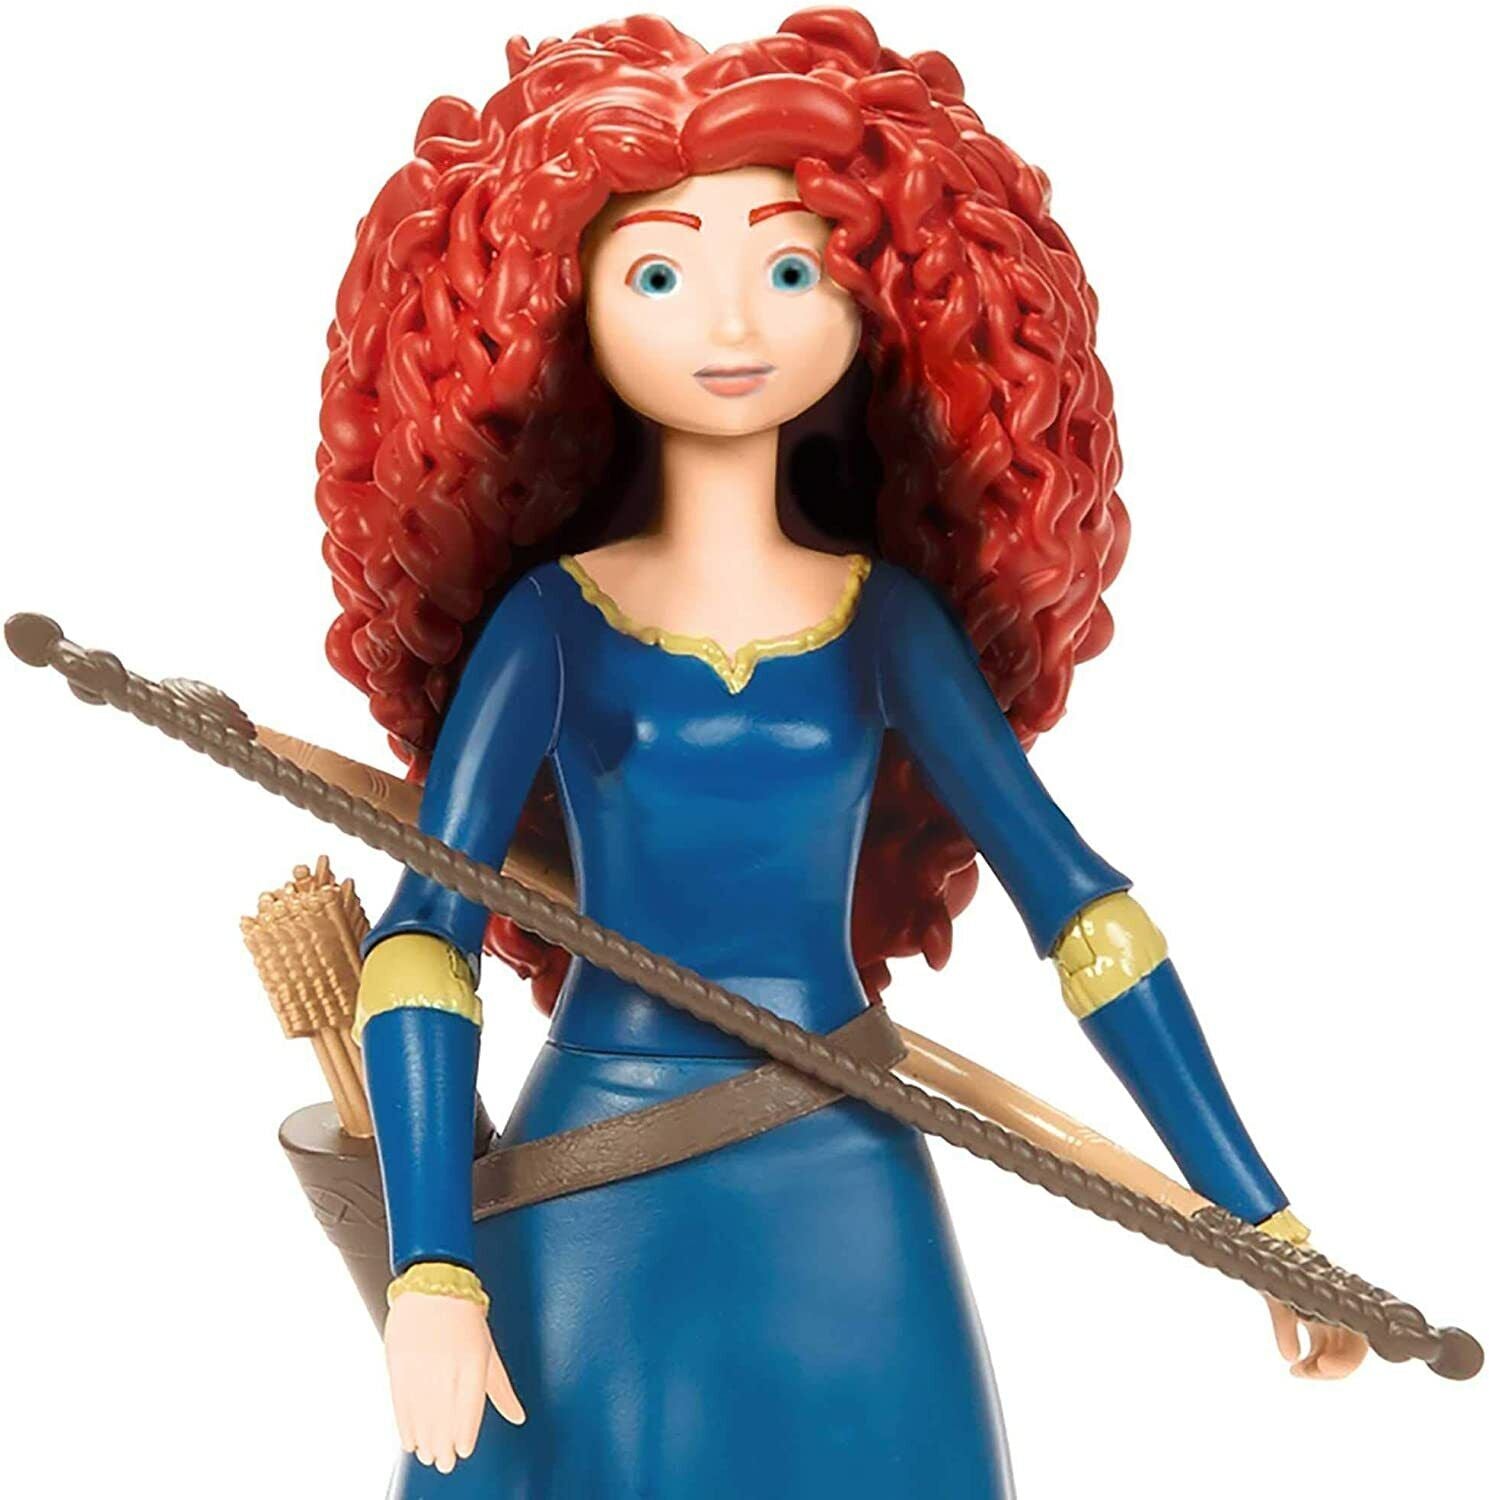 New Disney Pixar Brave Merida Action Figure - Collectible Toy